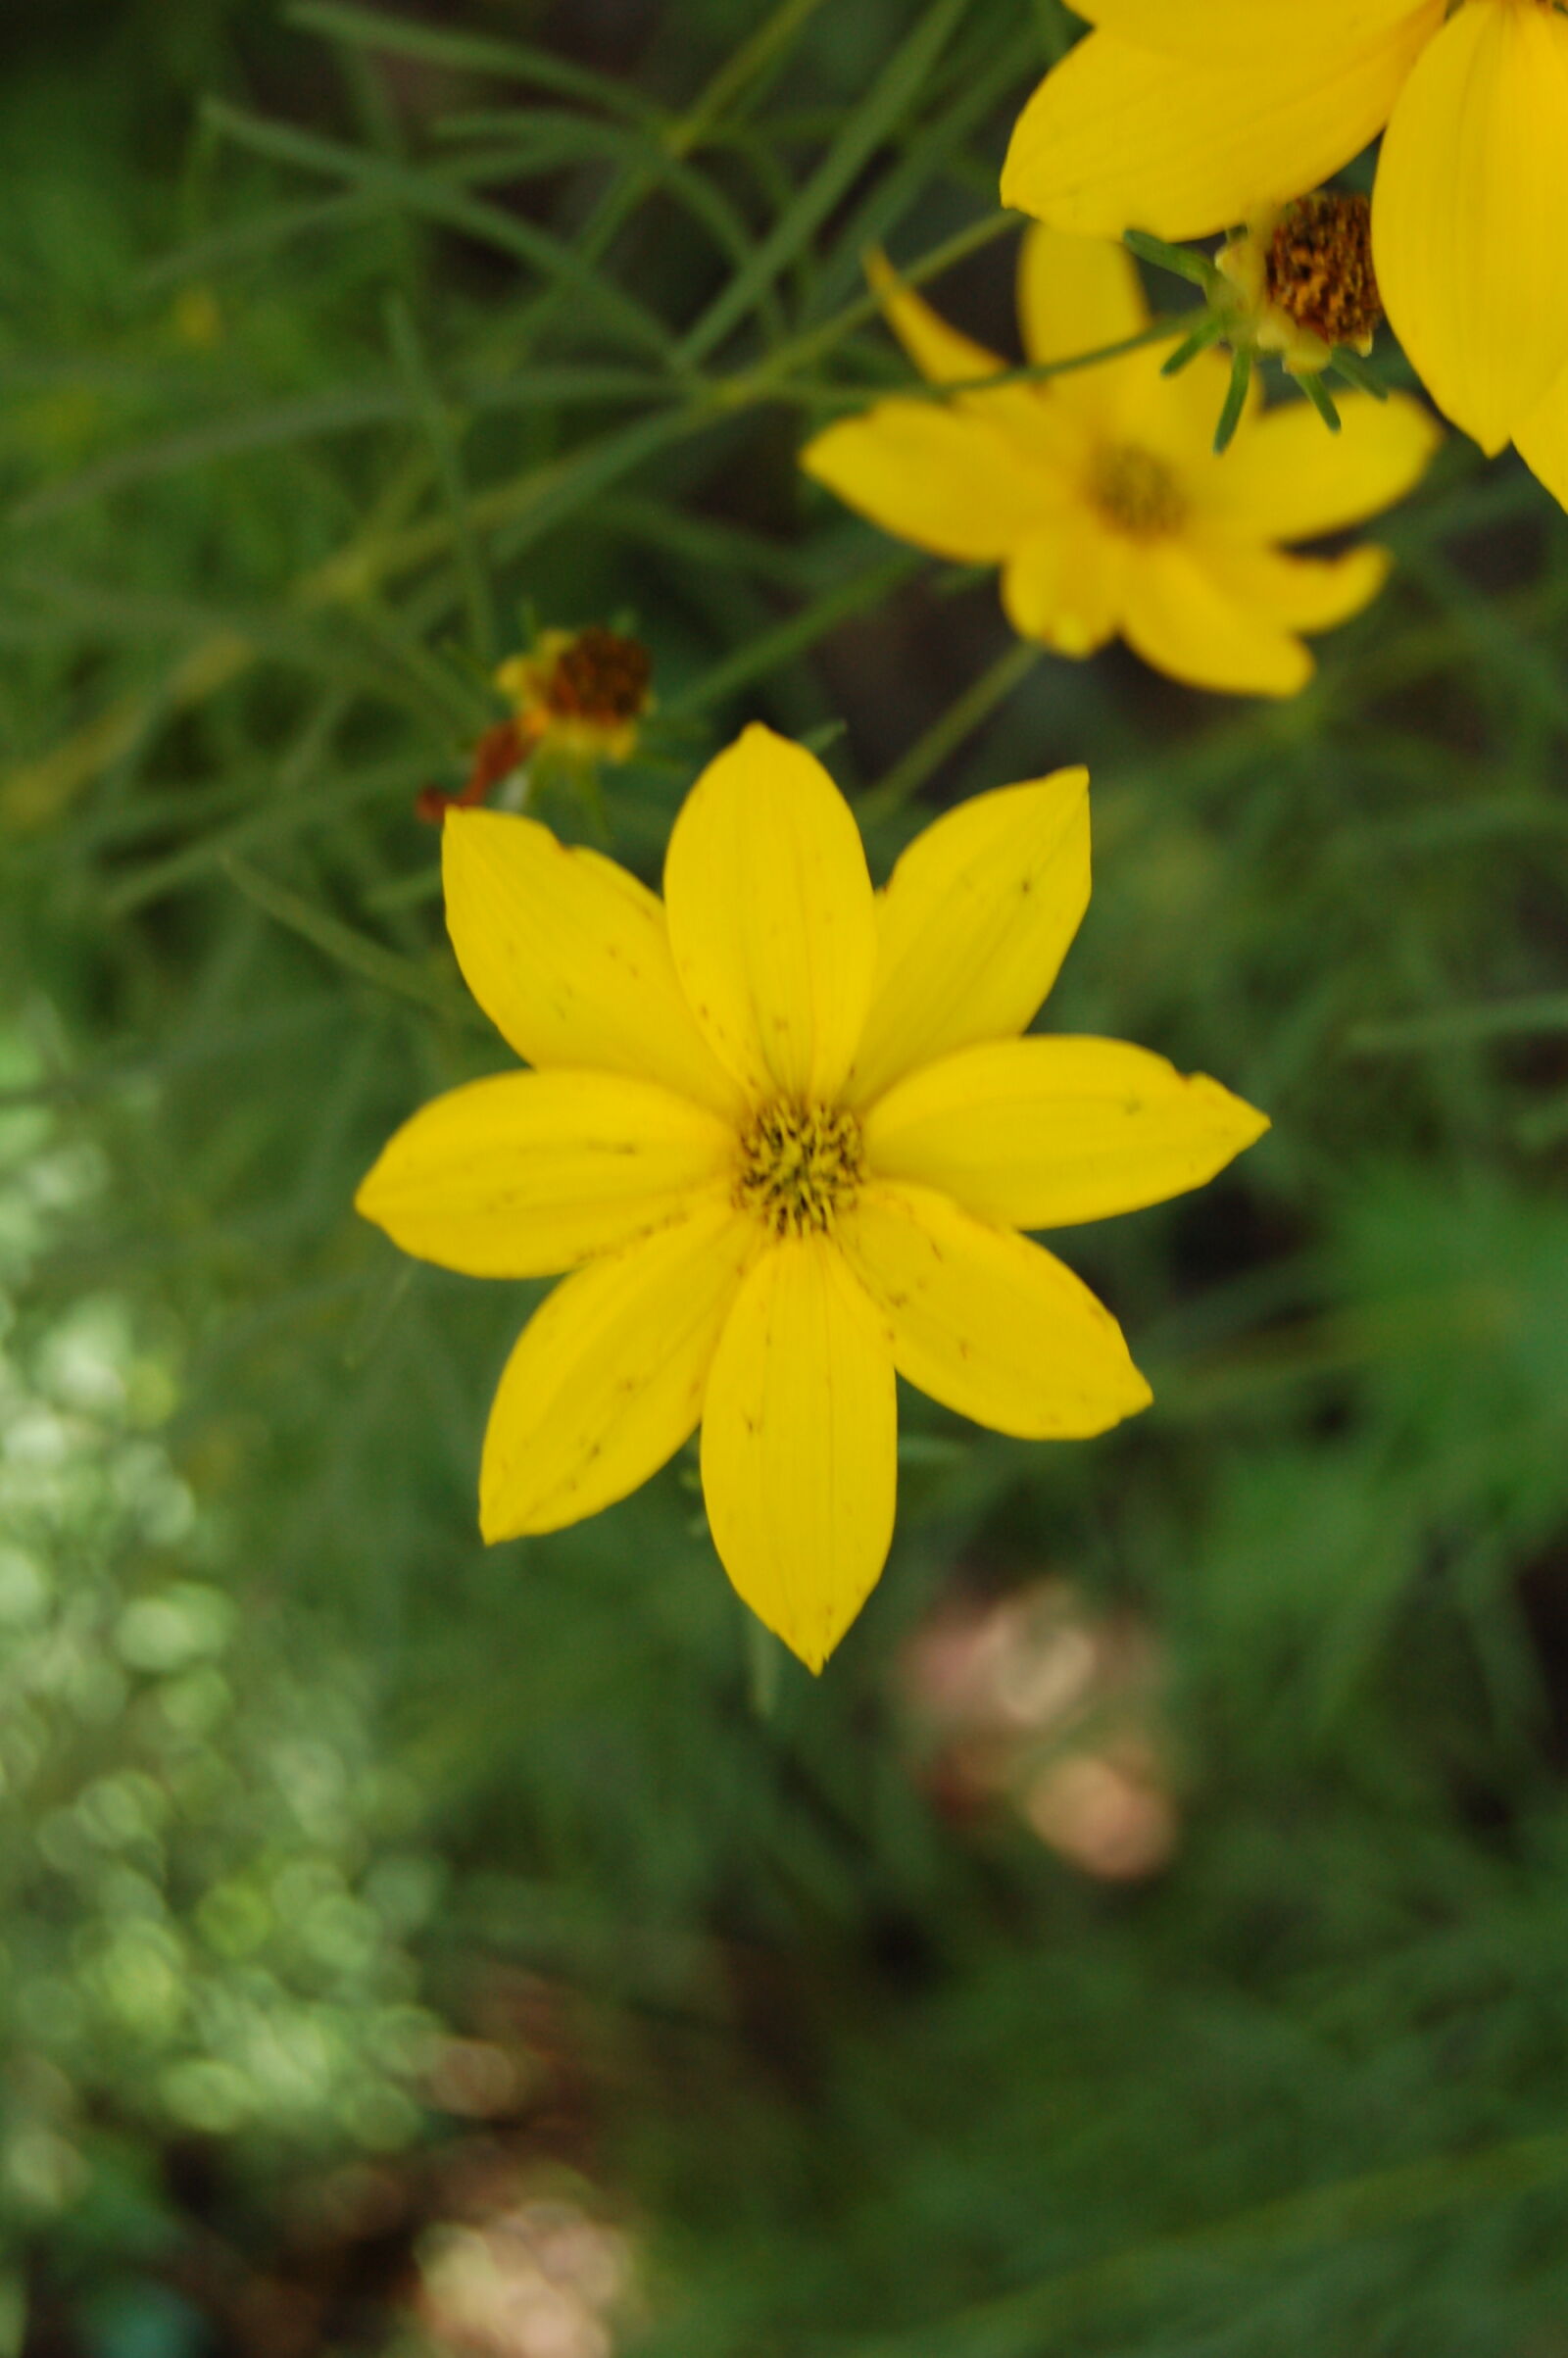 AF-S DX Zoom-Nikkor 18-55mm f/3.5-5.6G ED sample photo. Flower, golden, flower, yellow photography